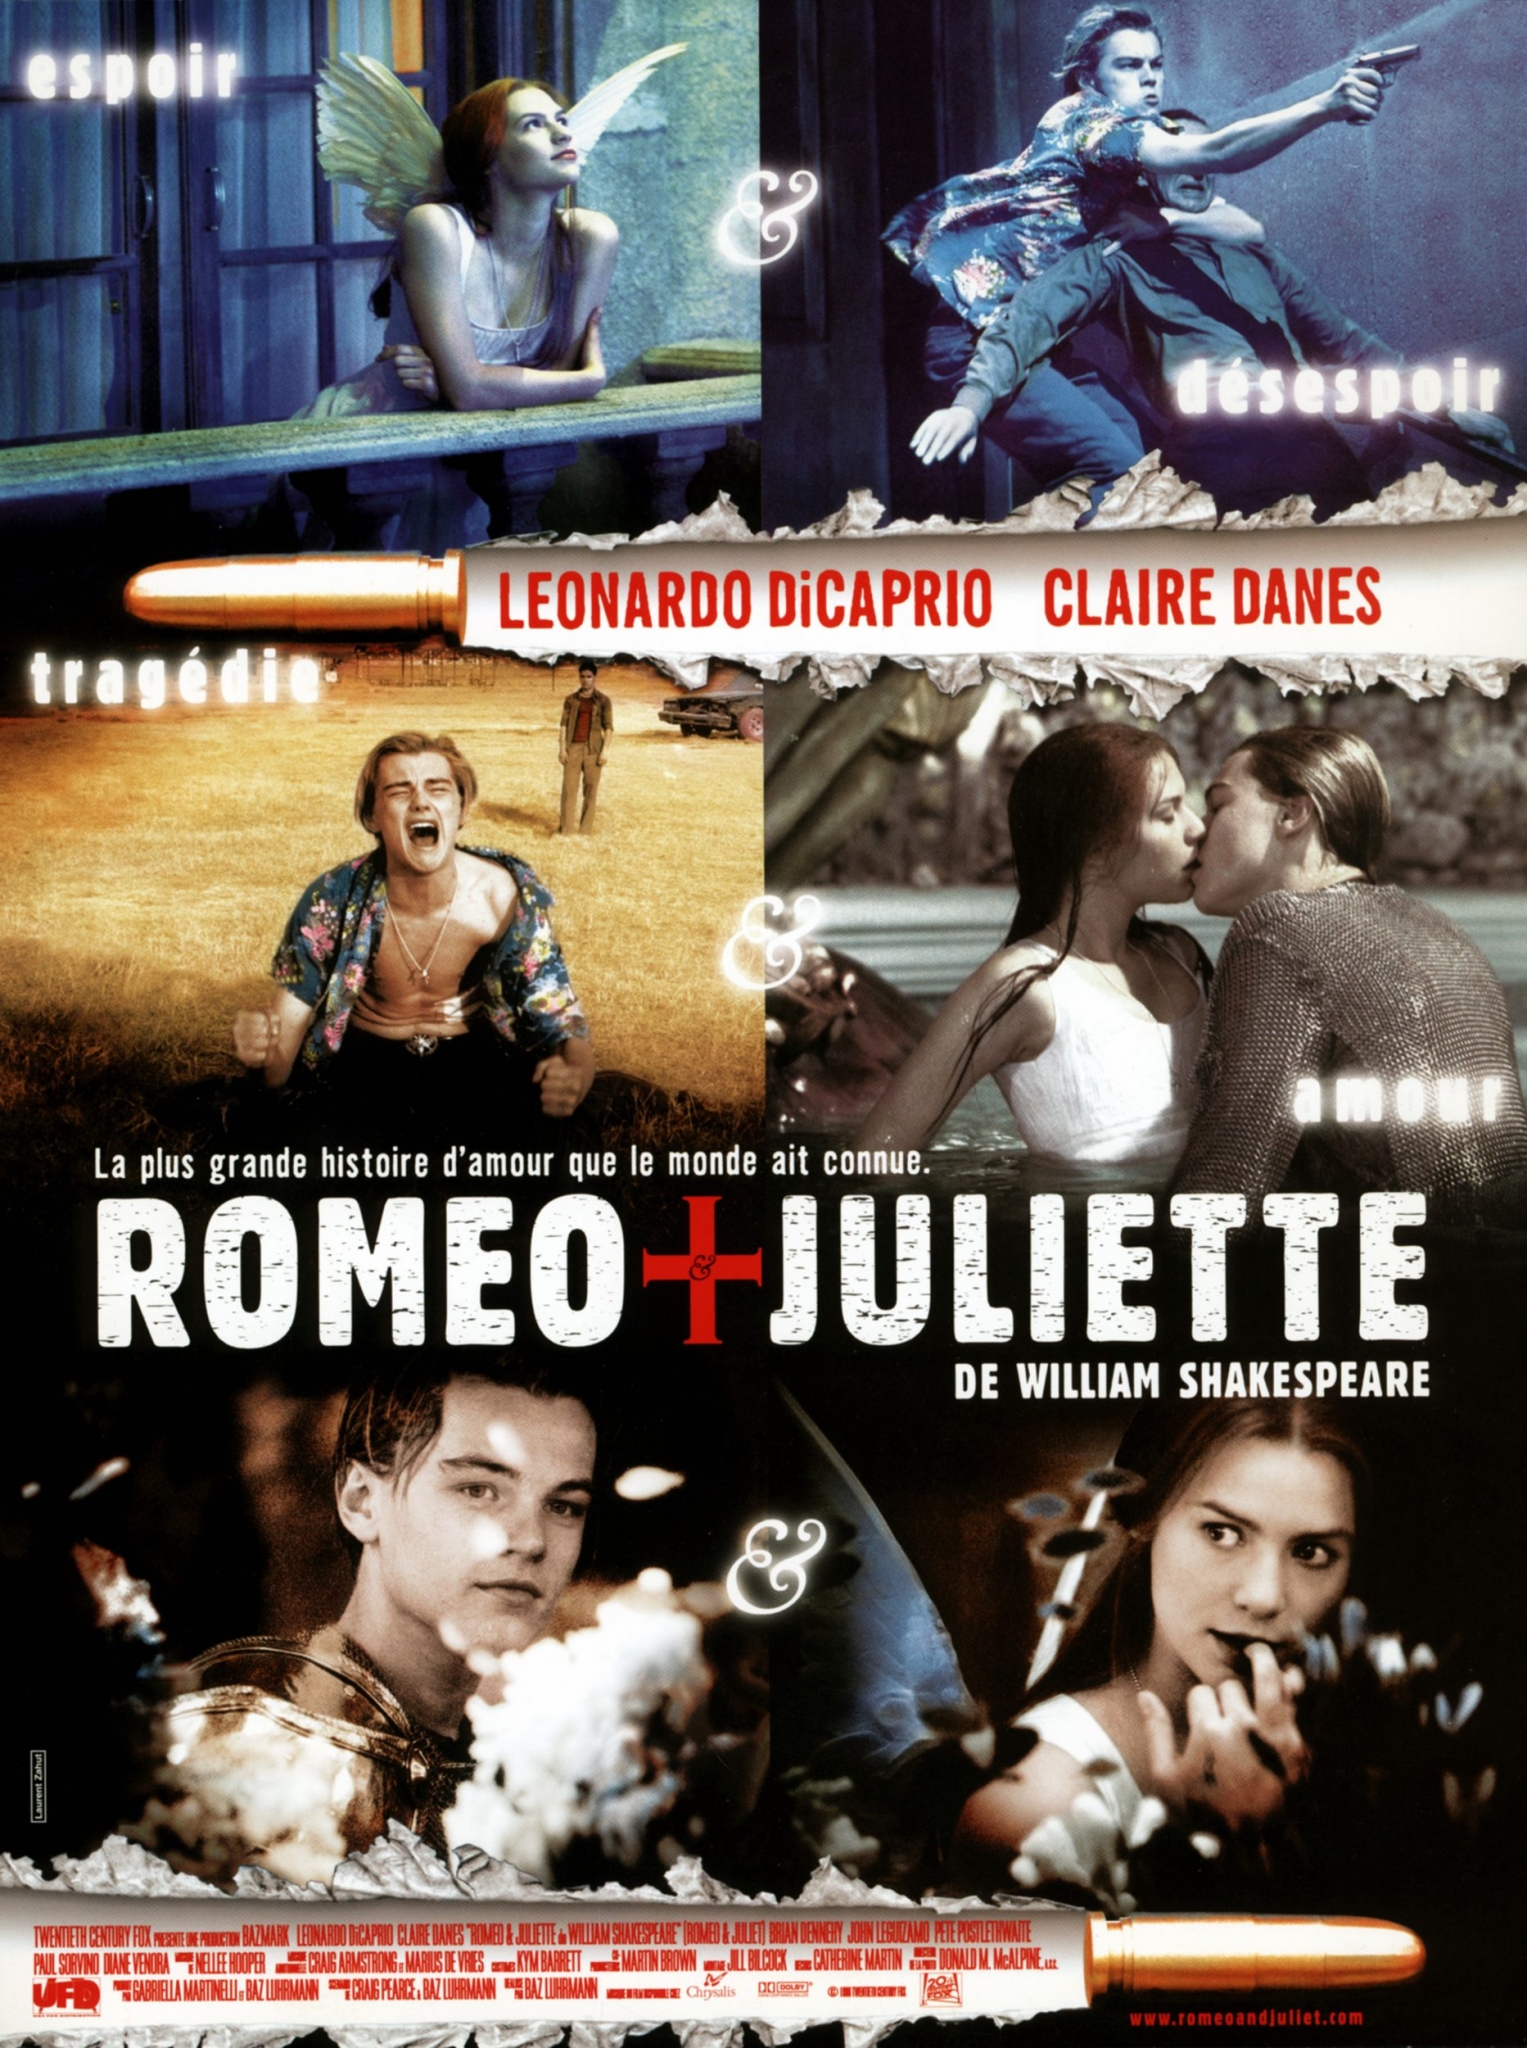 Romeo-Juliet-Posters-001.jpg